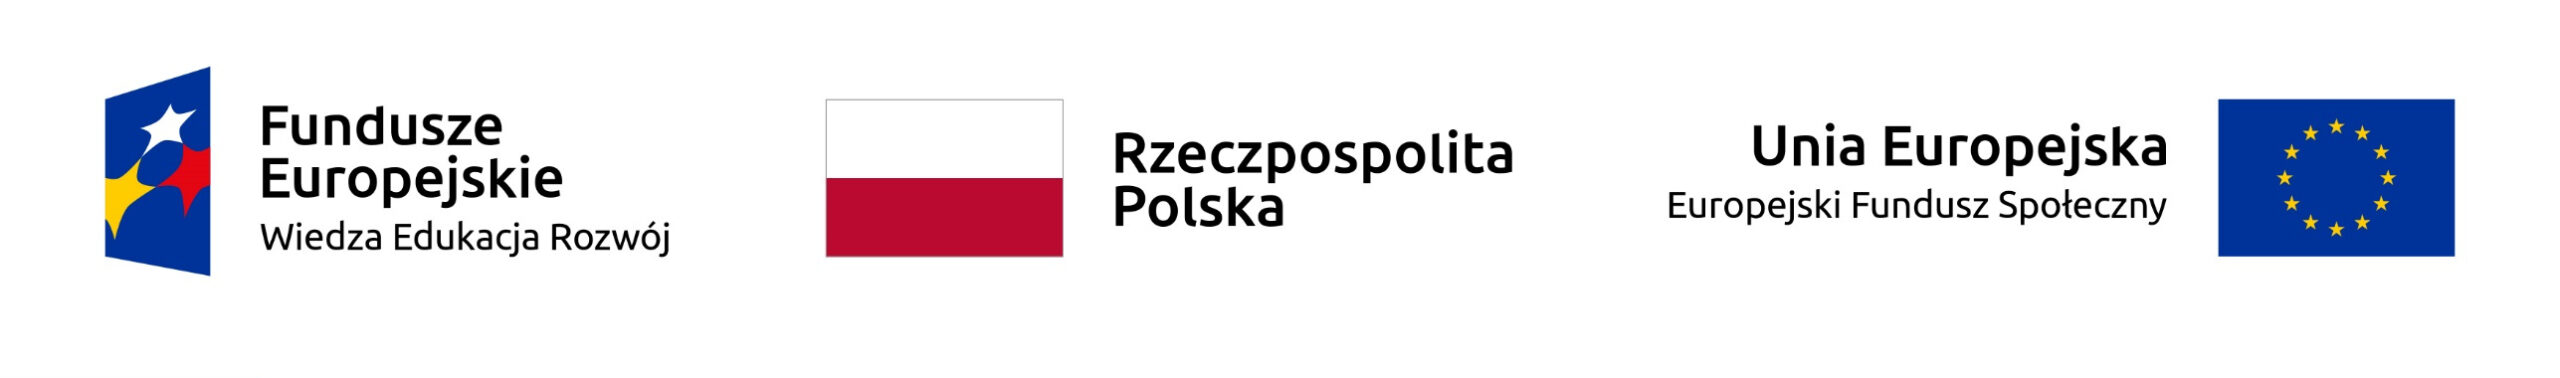 Baner z logotypami. Od lewej storny w kolejności. Fundusze europejskie wiedza i edukacja, Rzeczpospolita Polska, Unia Europejska europejski fundusz zdrowia